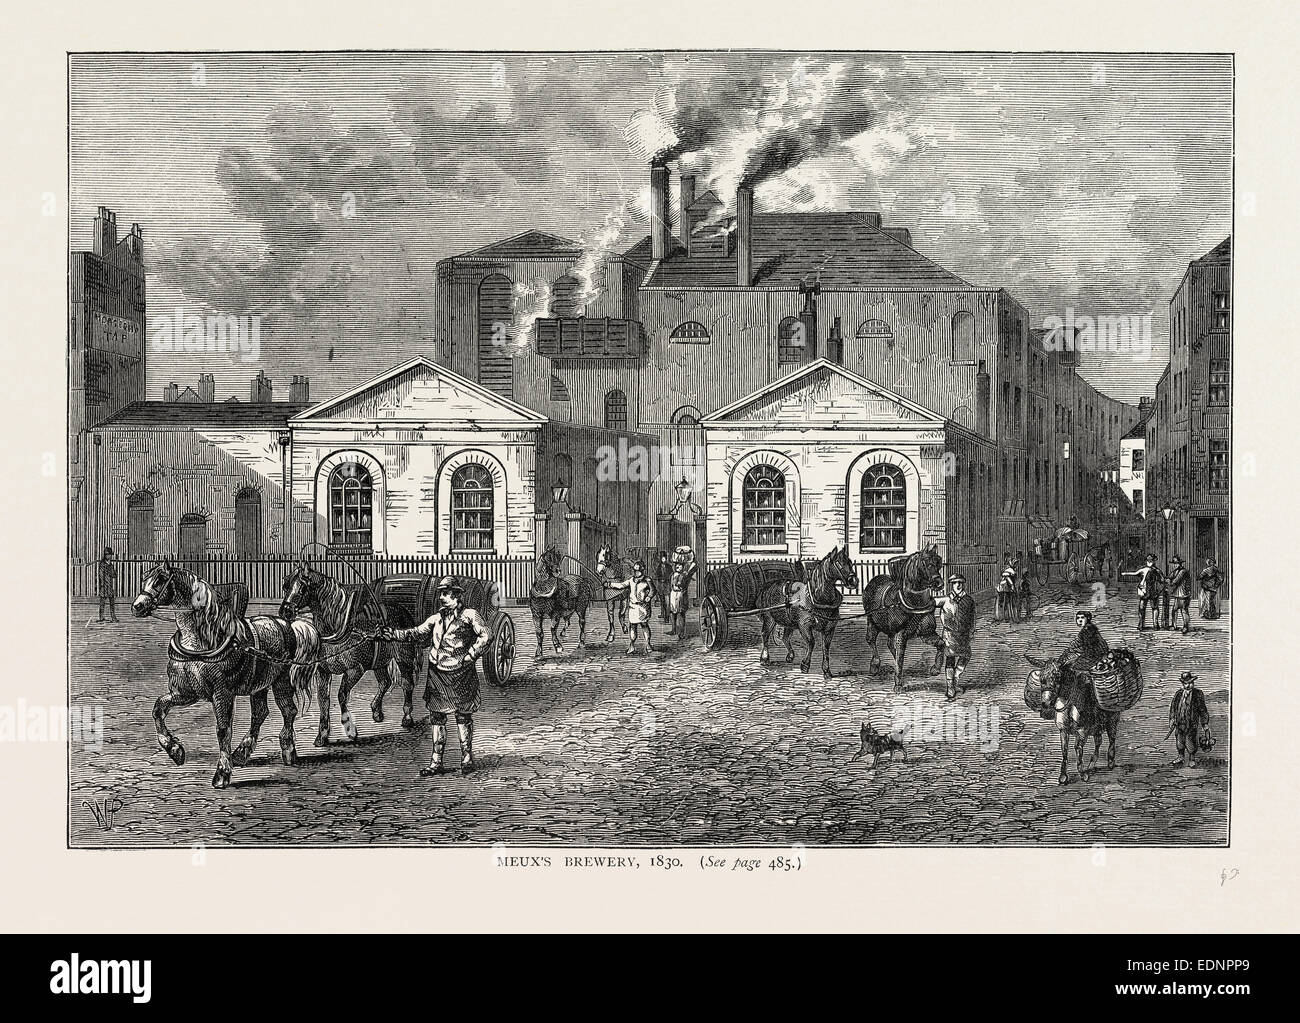 Meux's Brewery, 1830, Londres, Royaume-Uni, la gravure du xixe siècle Banque D'Images